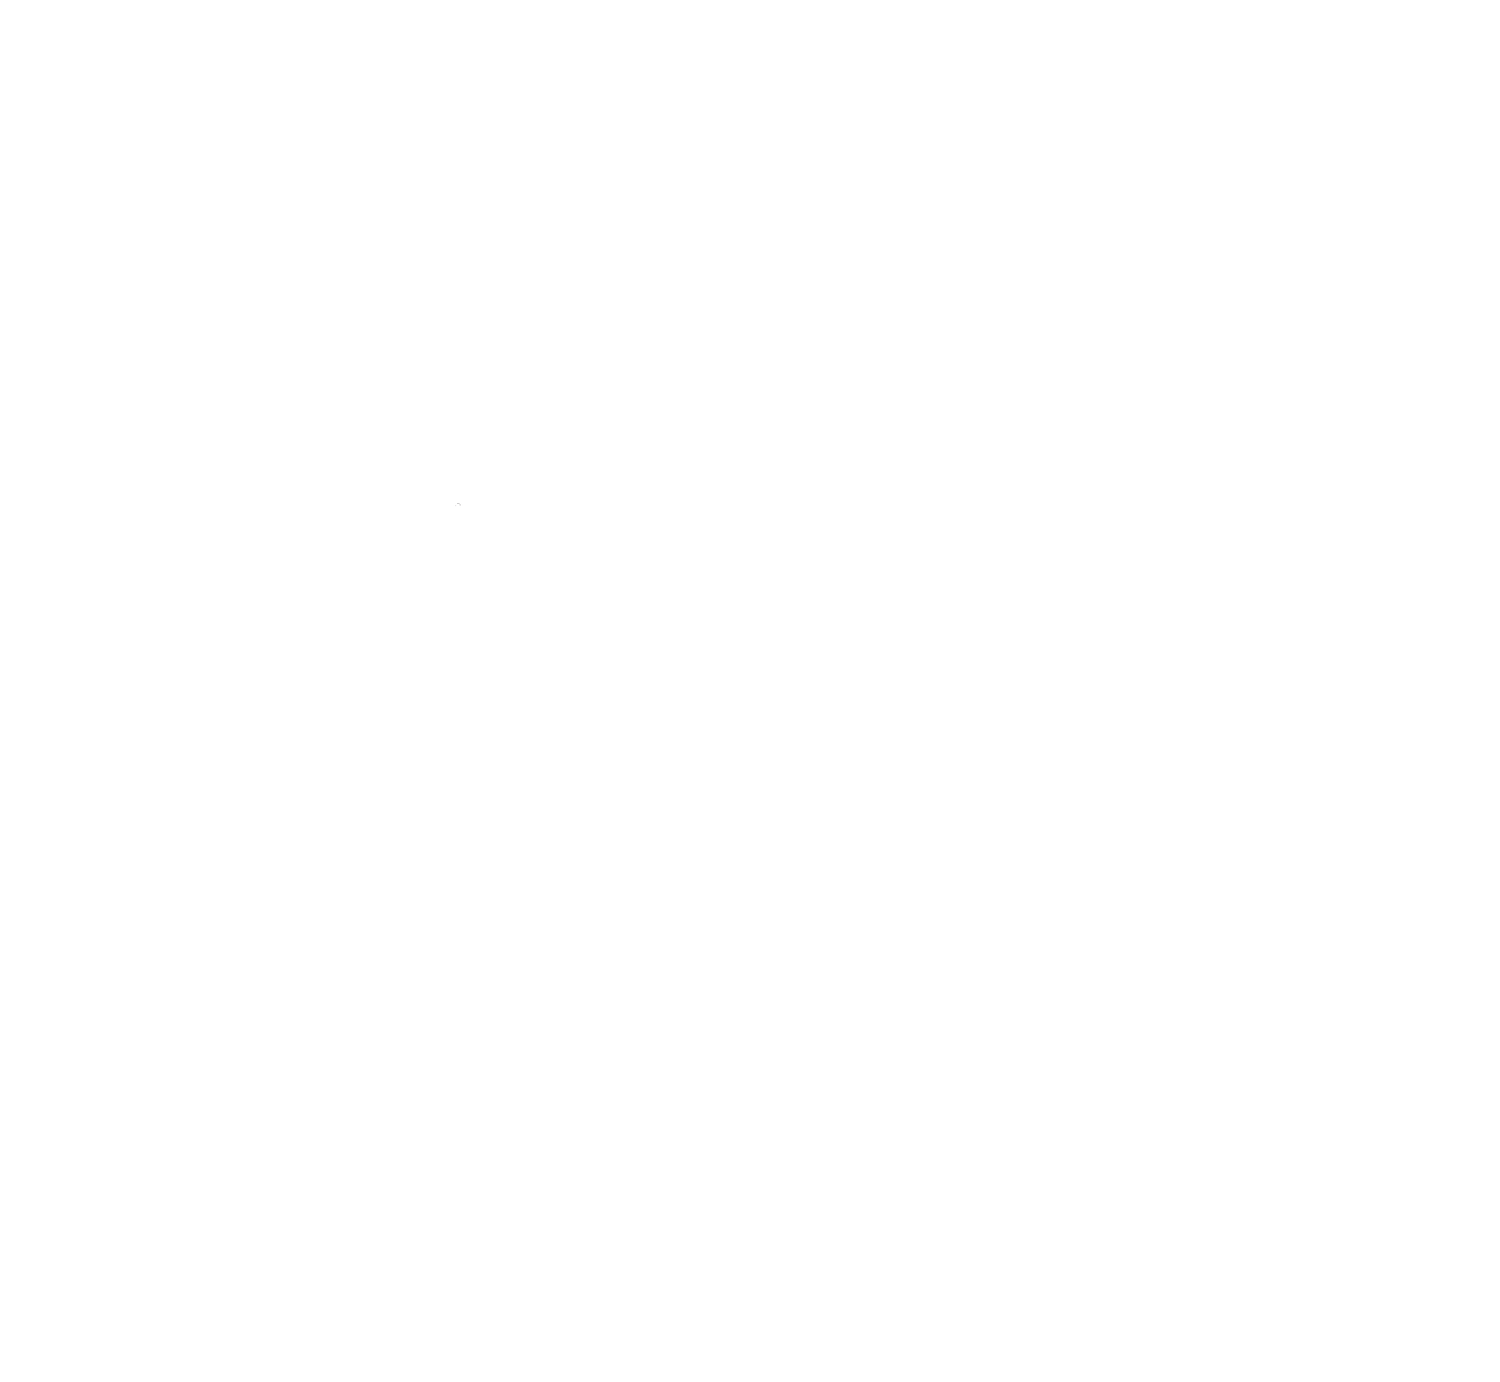 Wild Edge Woodcraft